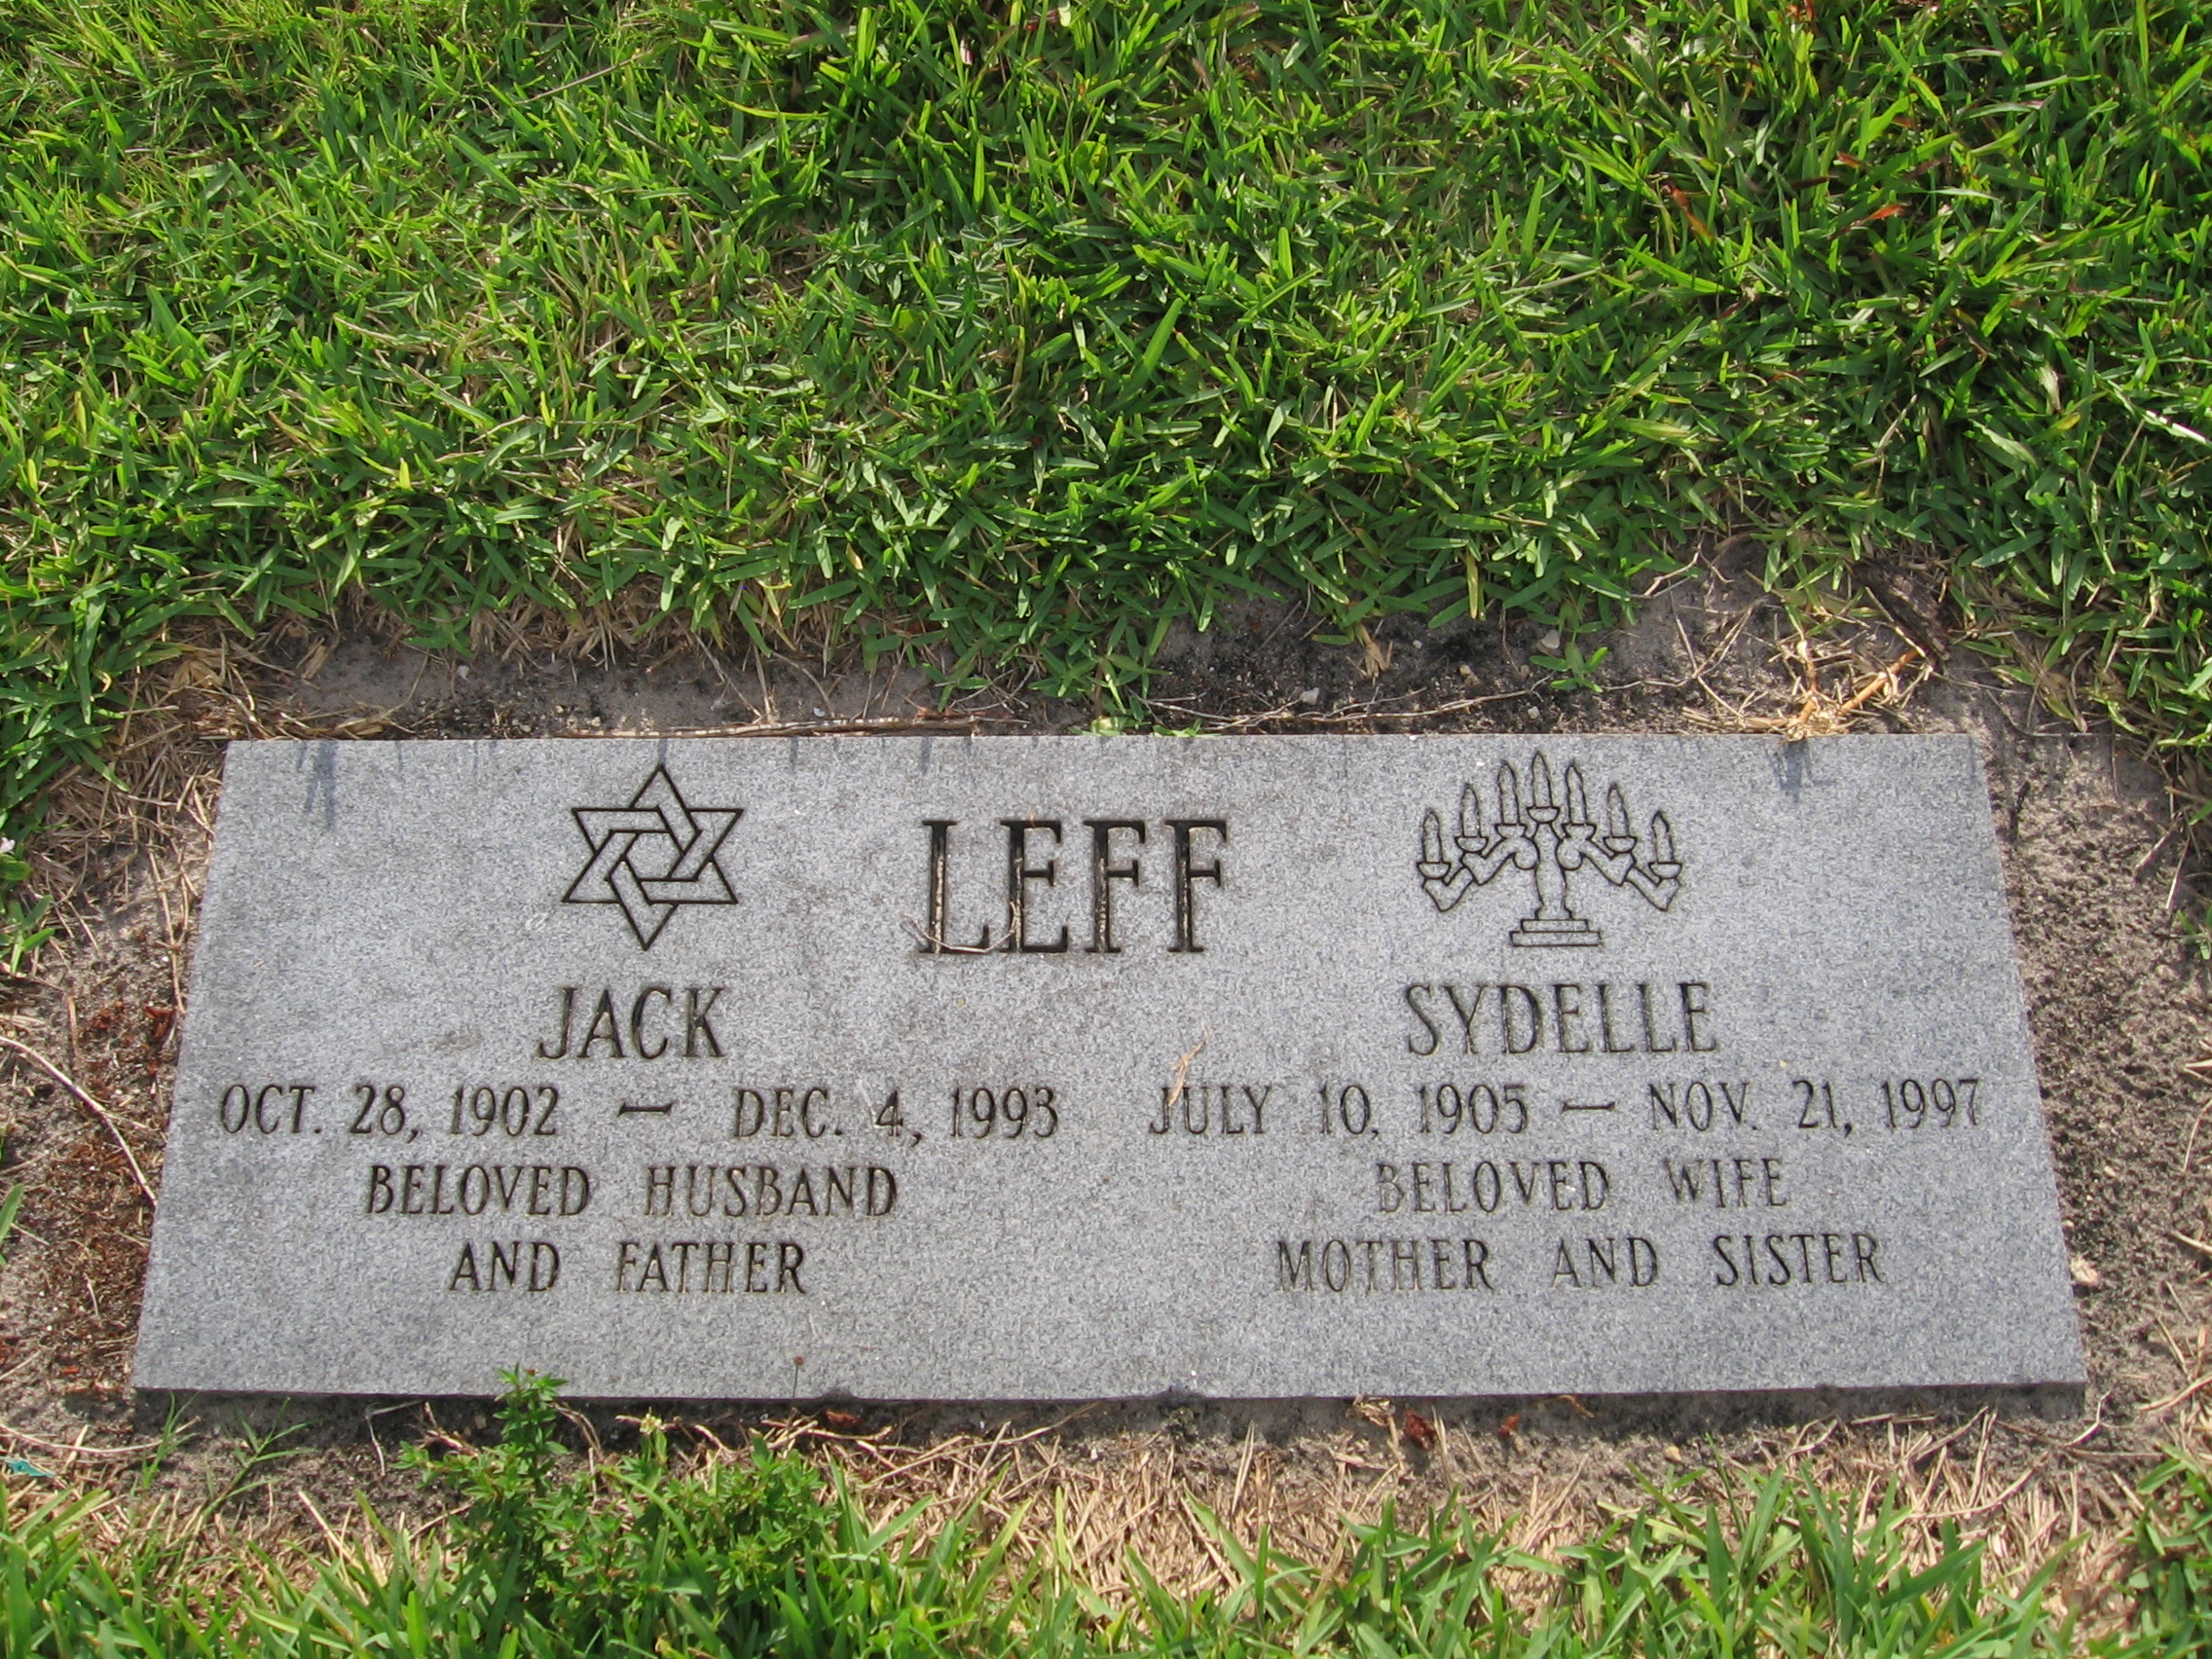 Jack Leff